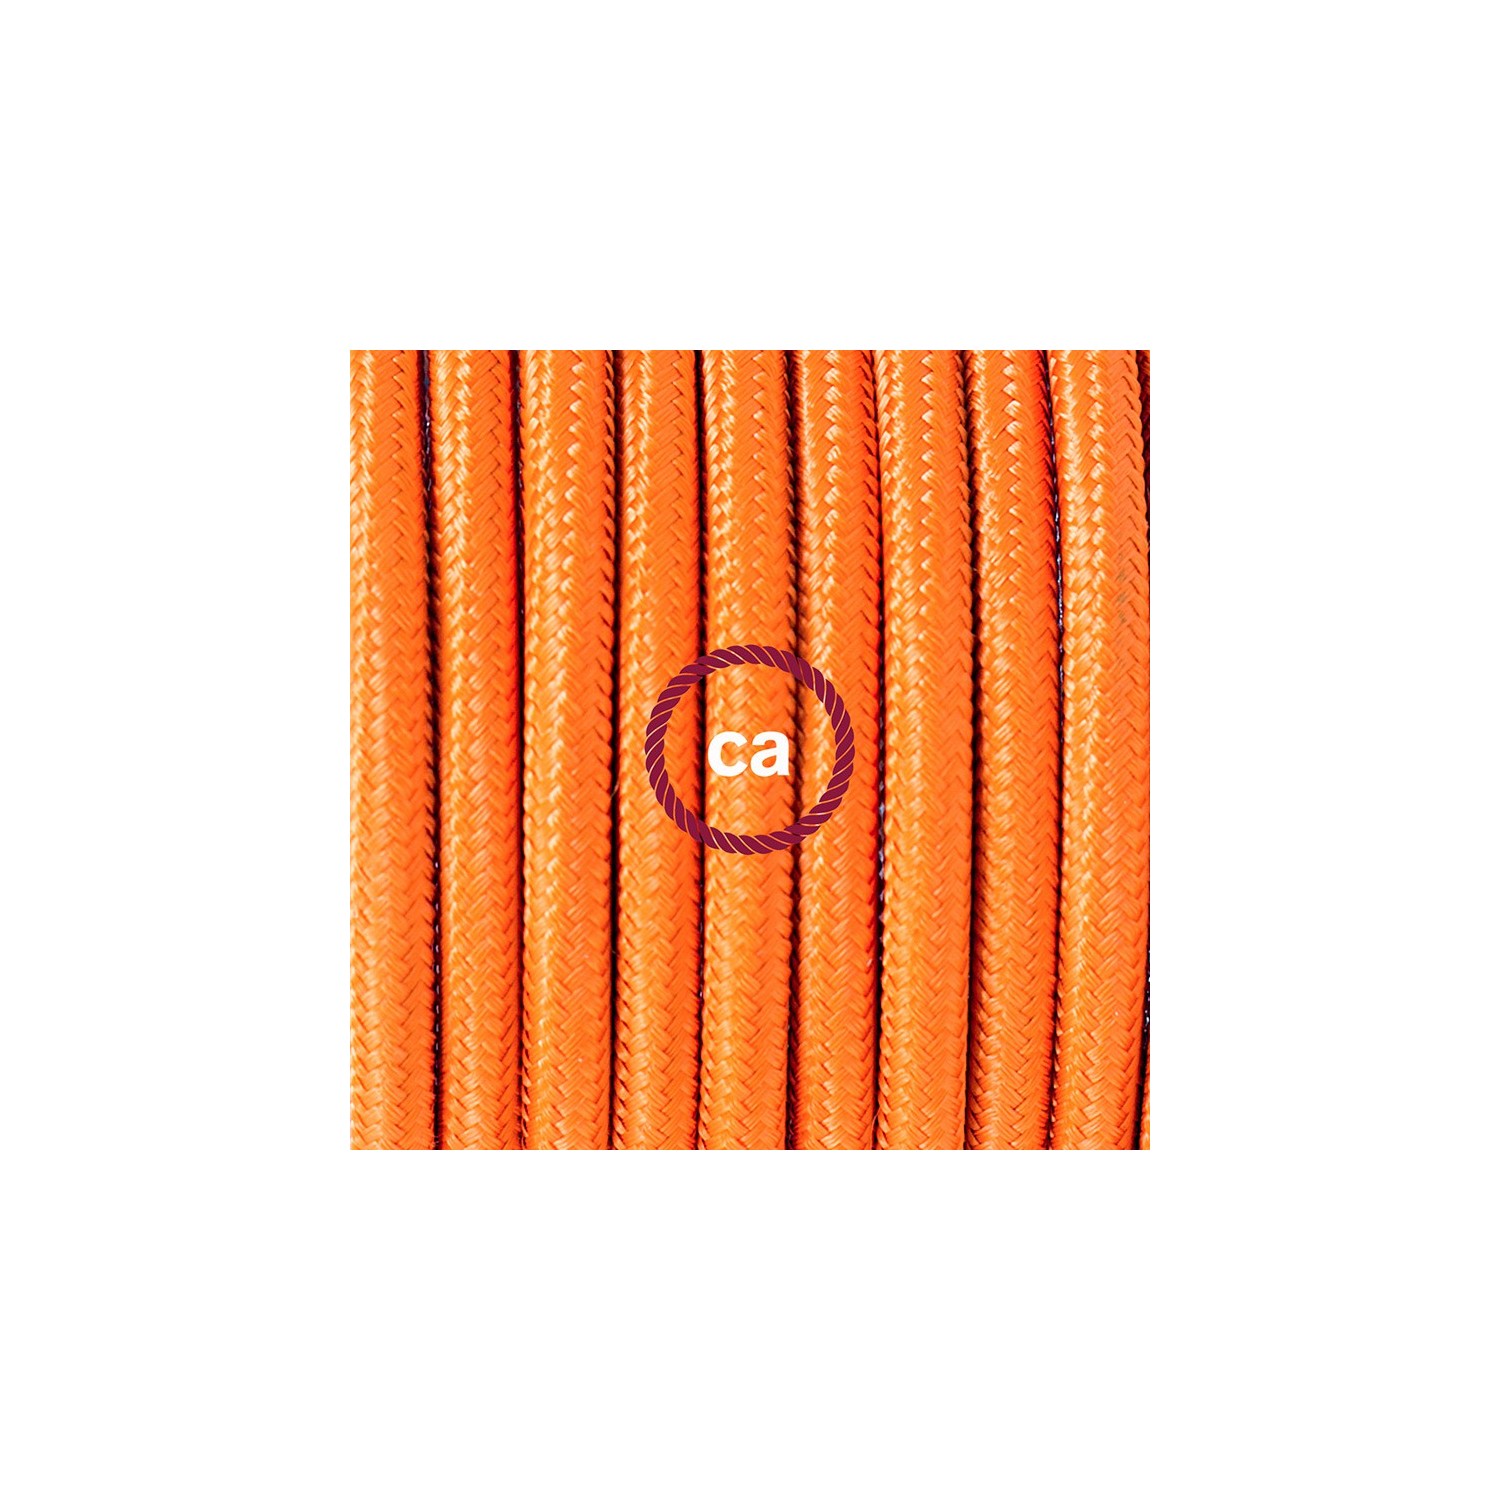 Sladdställ med fotströmbrytare, RM15 Orange Viskos 3 m. Välj färg på strömbrytare och kontakt